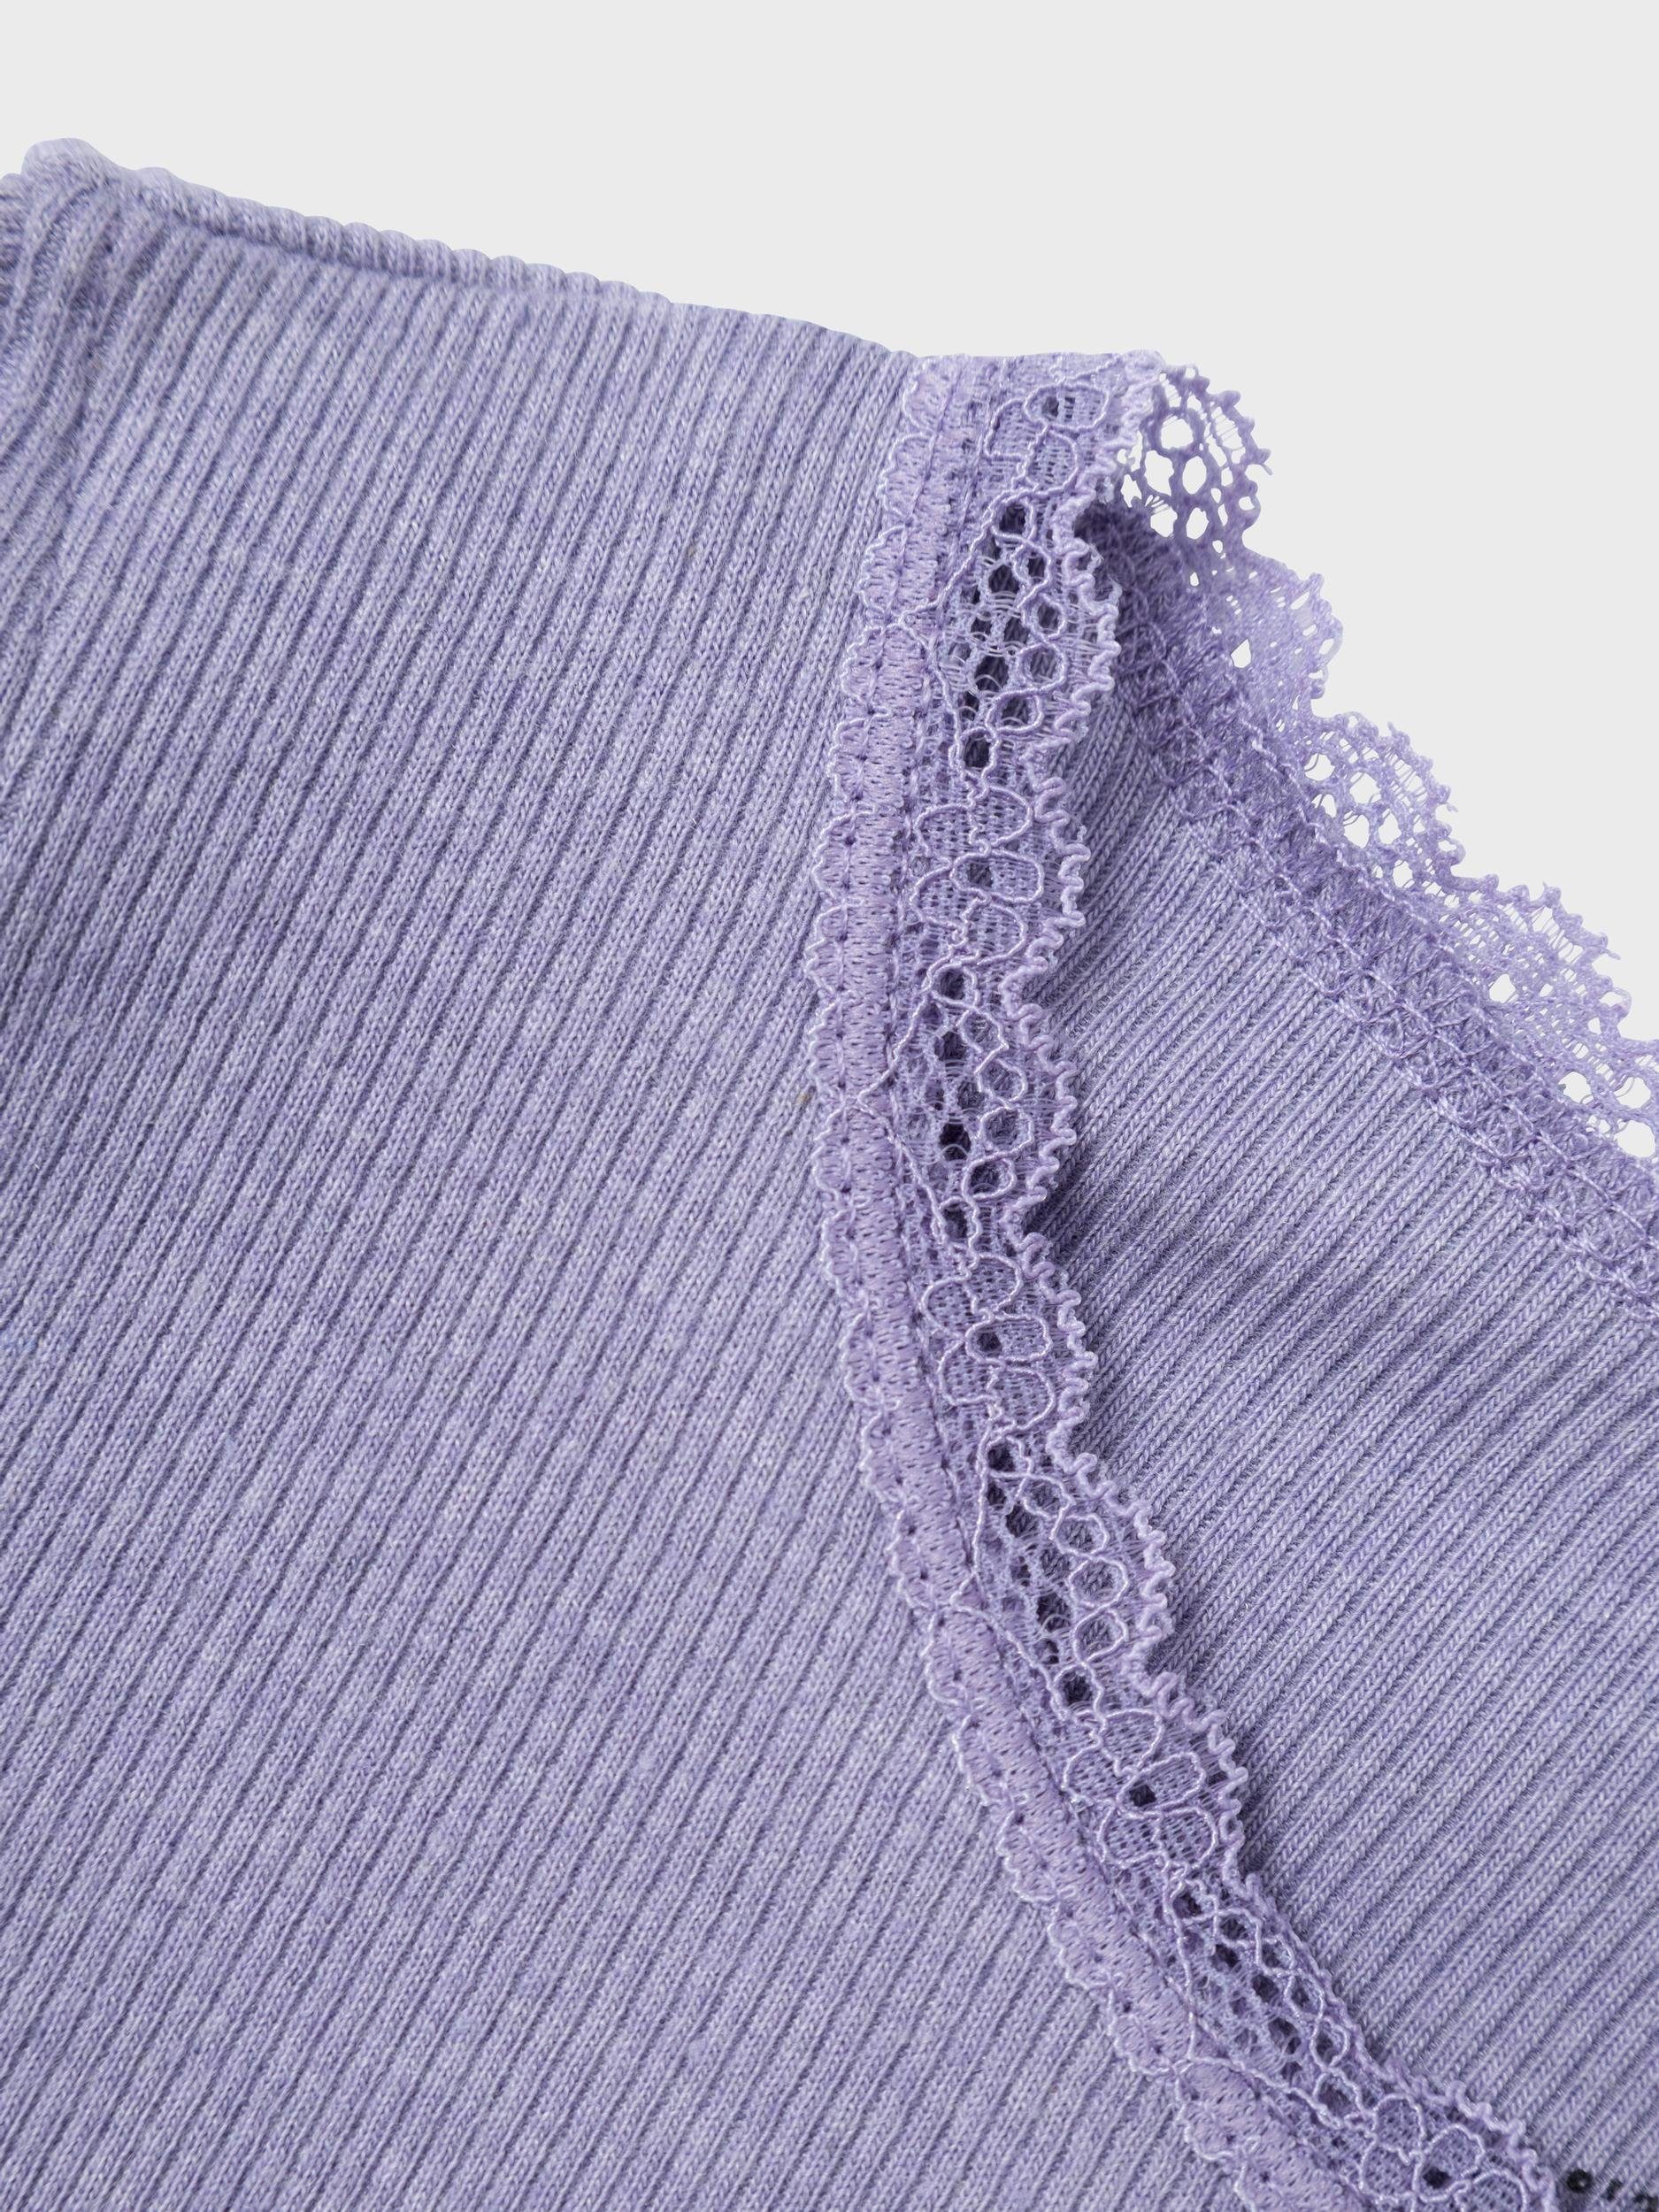 Heirloom It Detail:MELANGE Lilac T-Shirt LS TOP NKFKAB NOOS Name SLIM